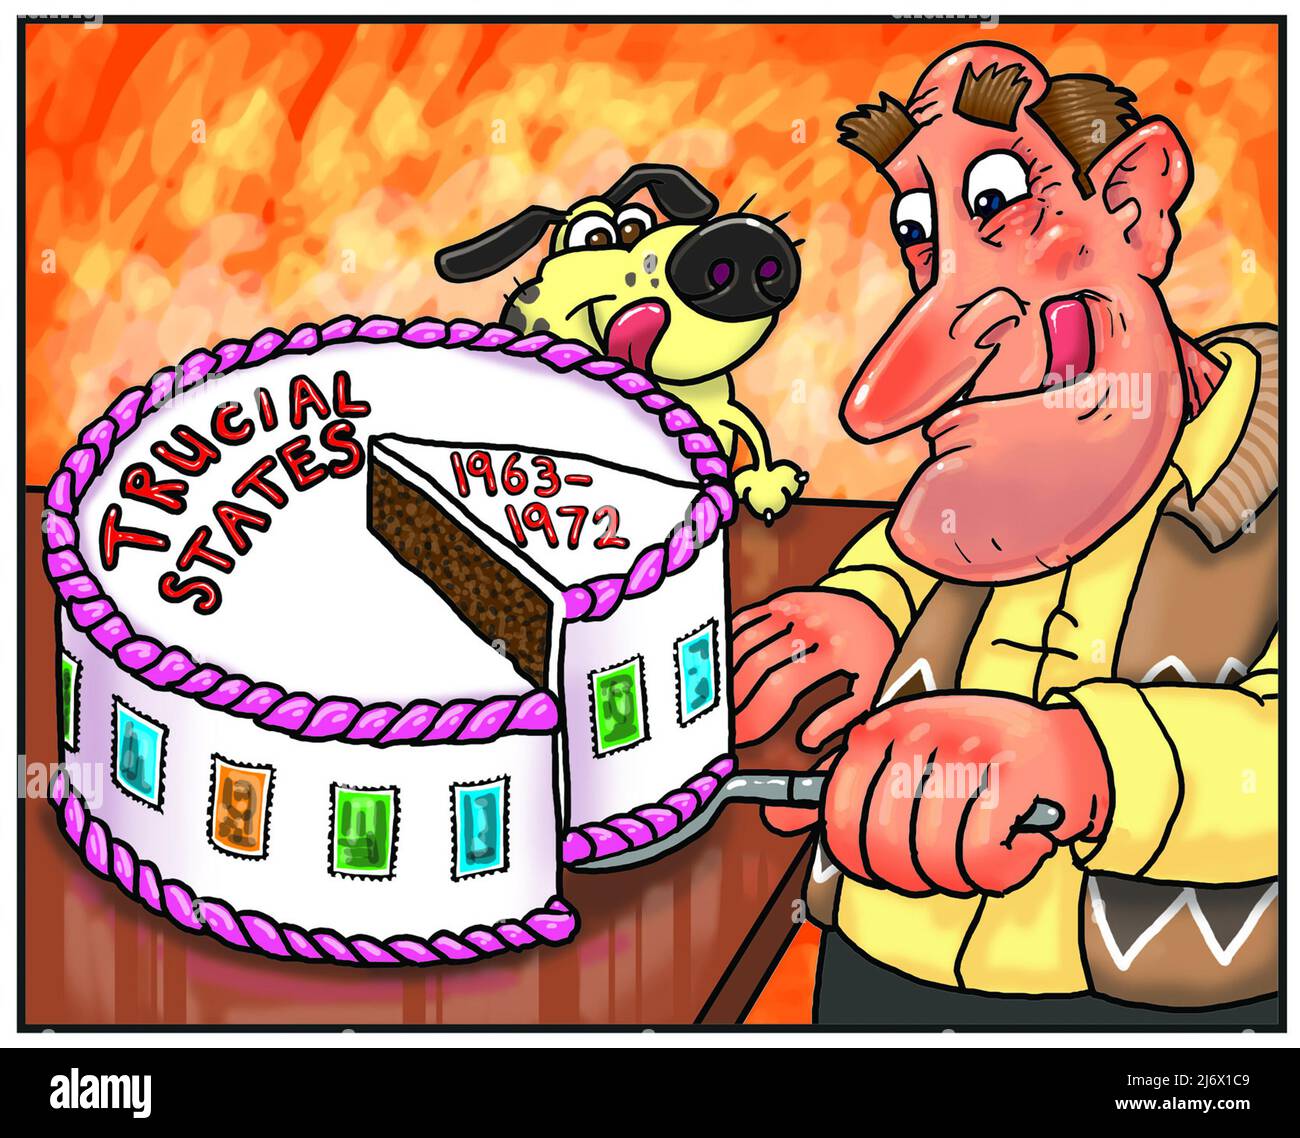 Lustige Cartoon-Kunst des Menschen schneiden einen Kuchen mit den Worten Trucial States 1963-1972 illustriert die Attraktivität der Trucial States Briefmarkensammeln Philatelie Stockfoto